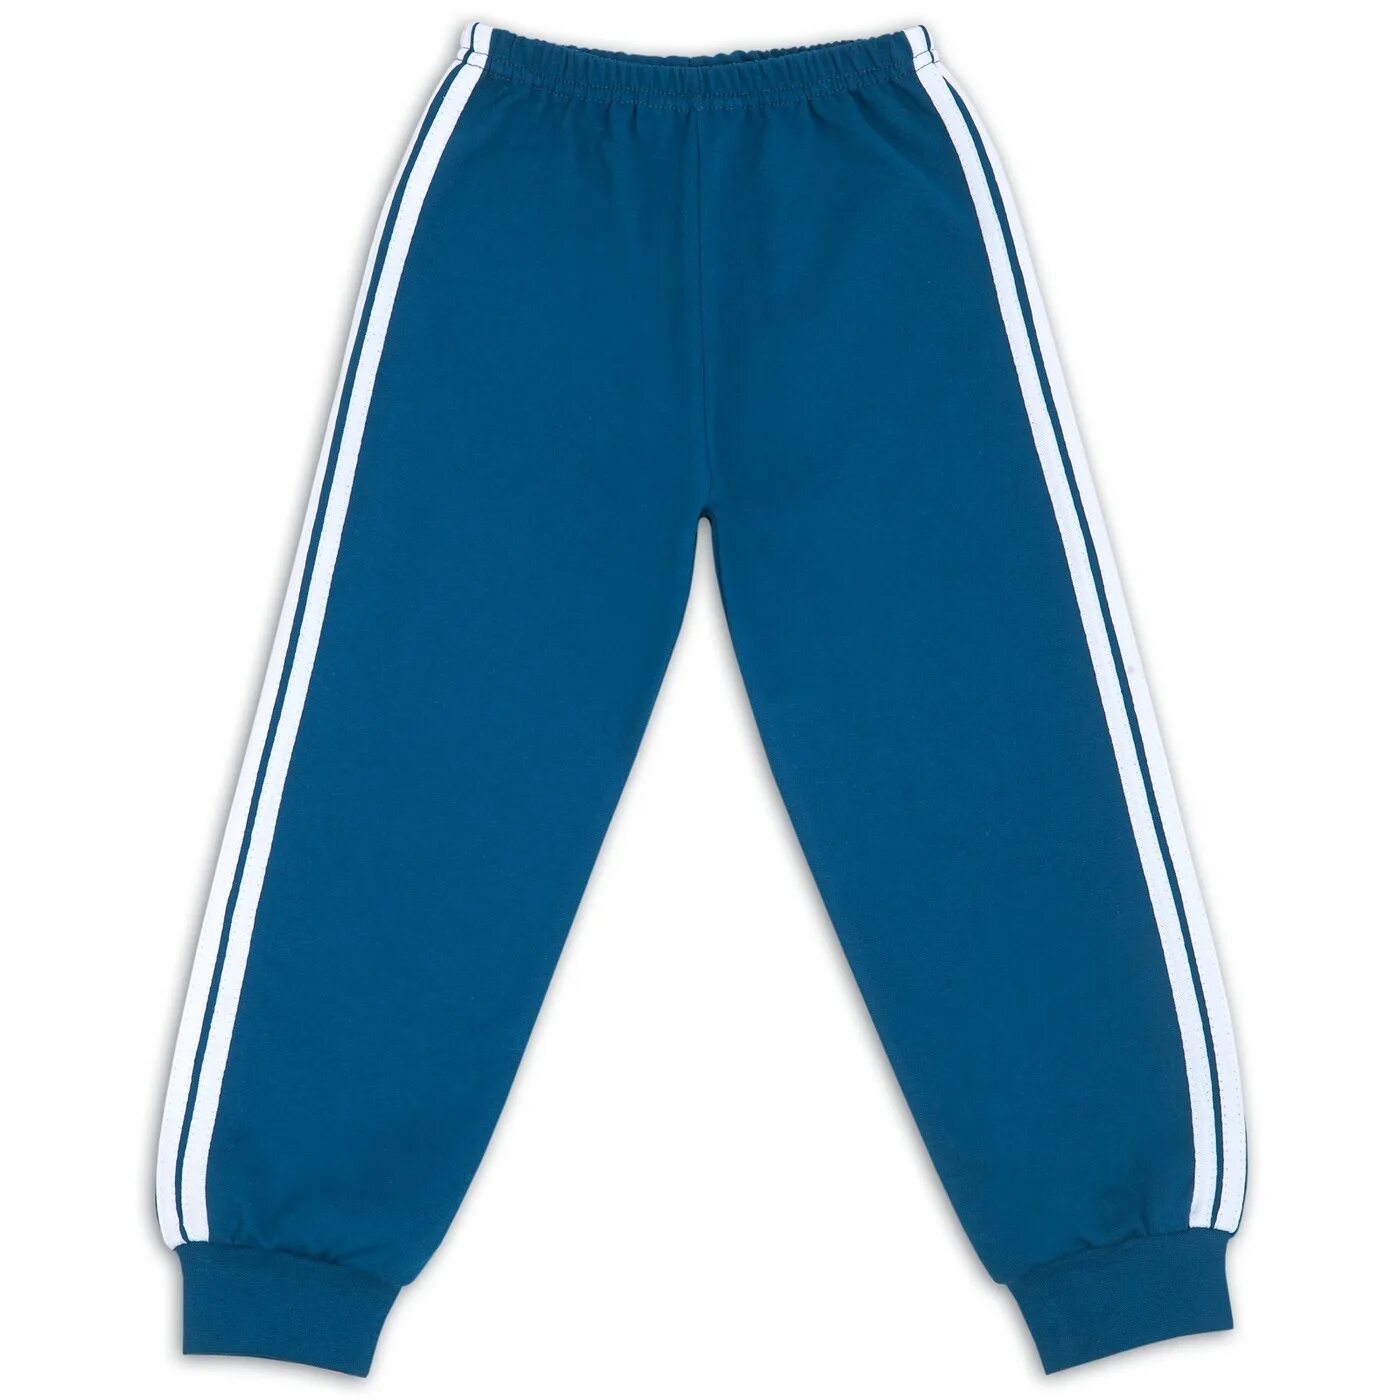 Трико цены. Трико FS 7227 синие. Трико с лампасами. Спортивные штаны детские. Спортивное трико для мальчиков.